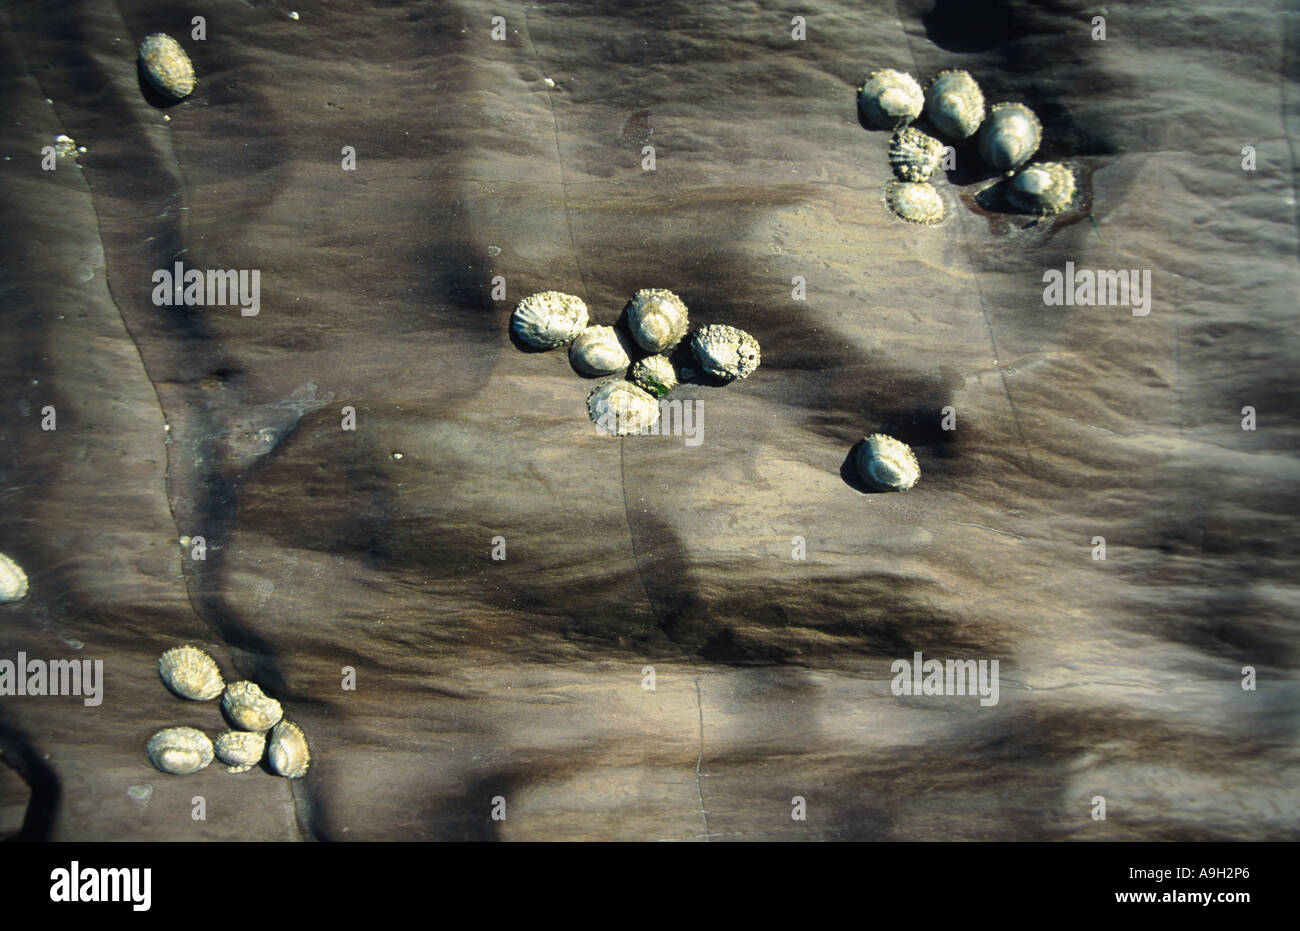 Napfschnecken, echte Napfschnecken (Patellidae), Irland Stockfoto